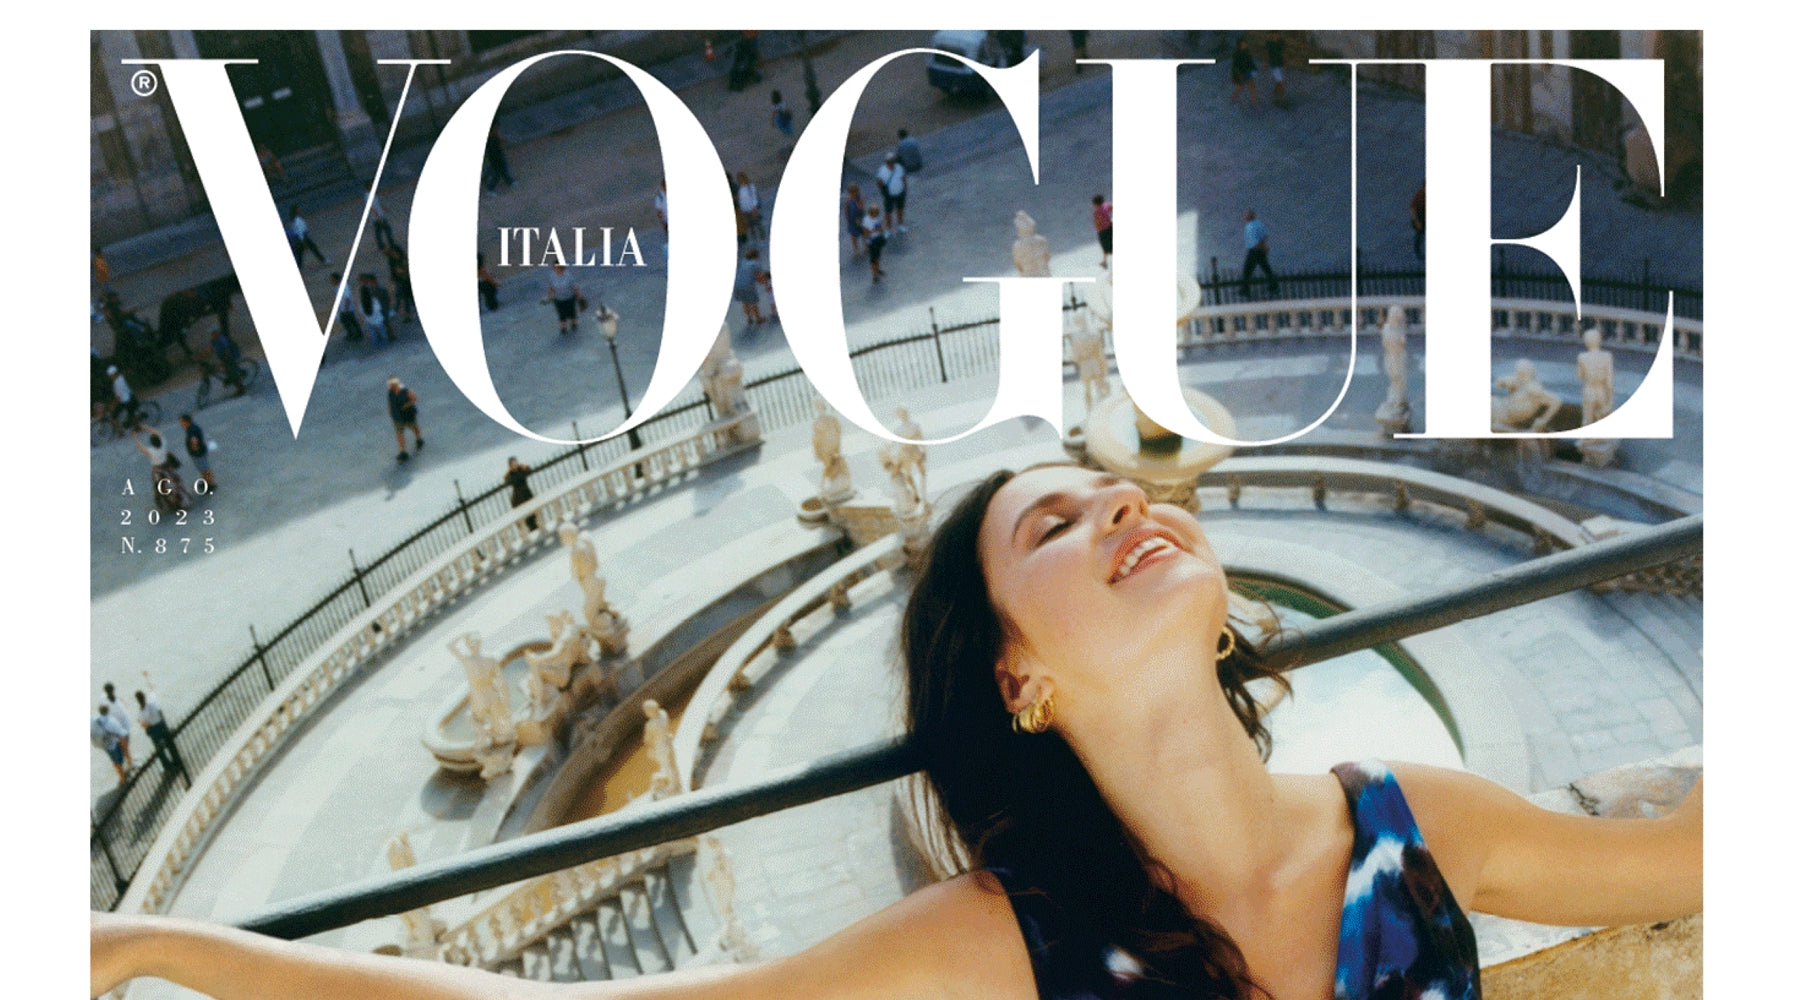 CASA PRETI Vogue Italia Interviasta a Mattia Piazza Agosto 2023